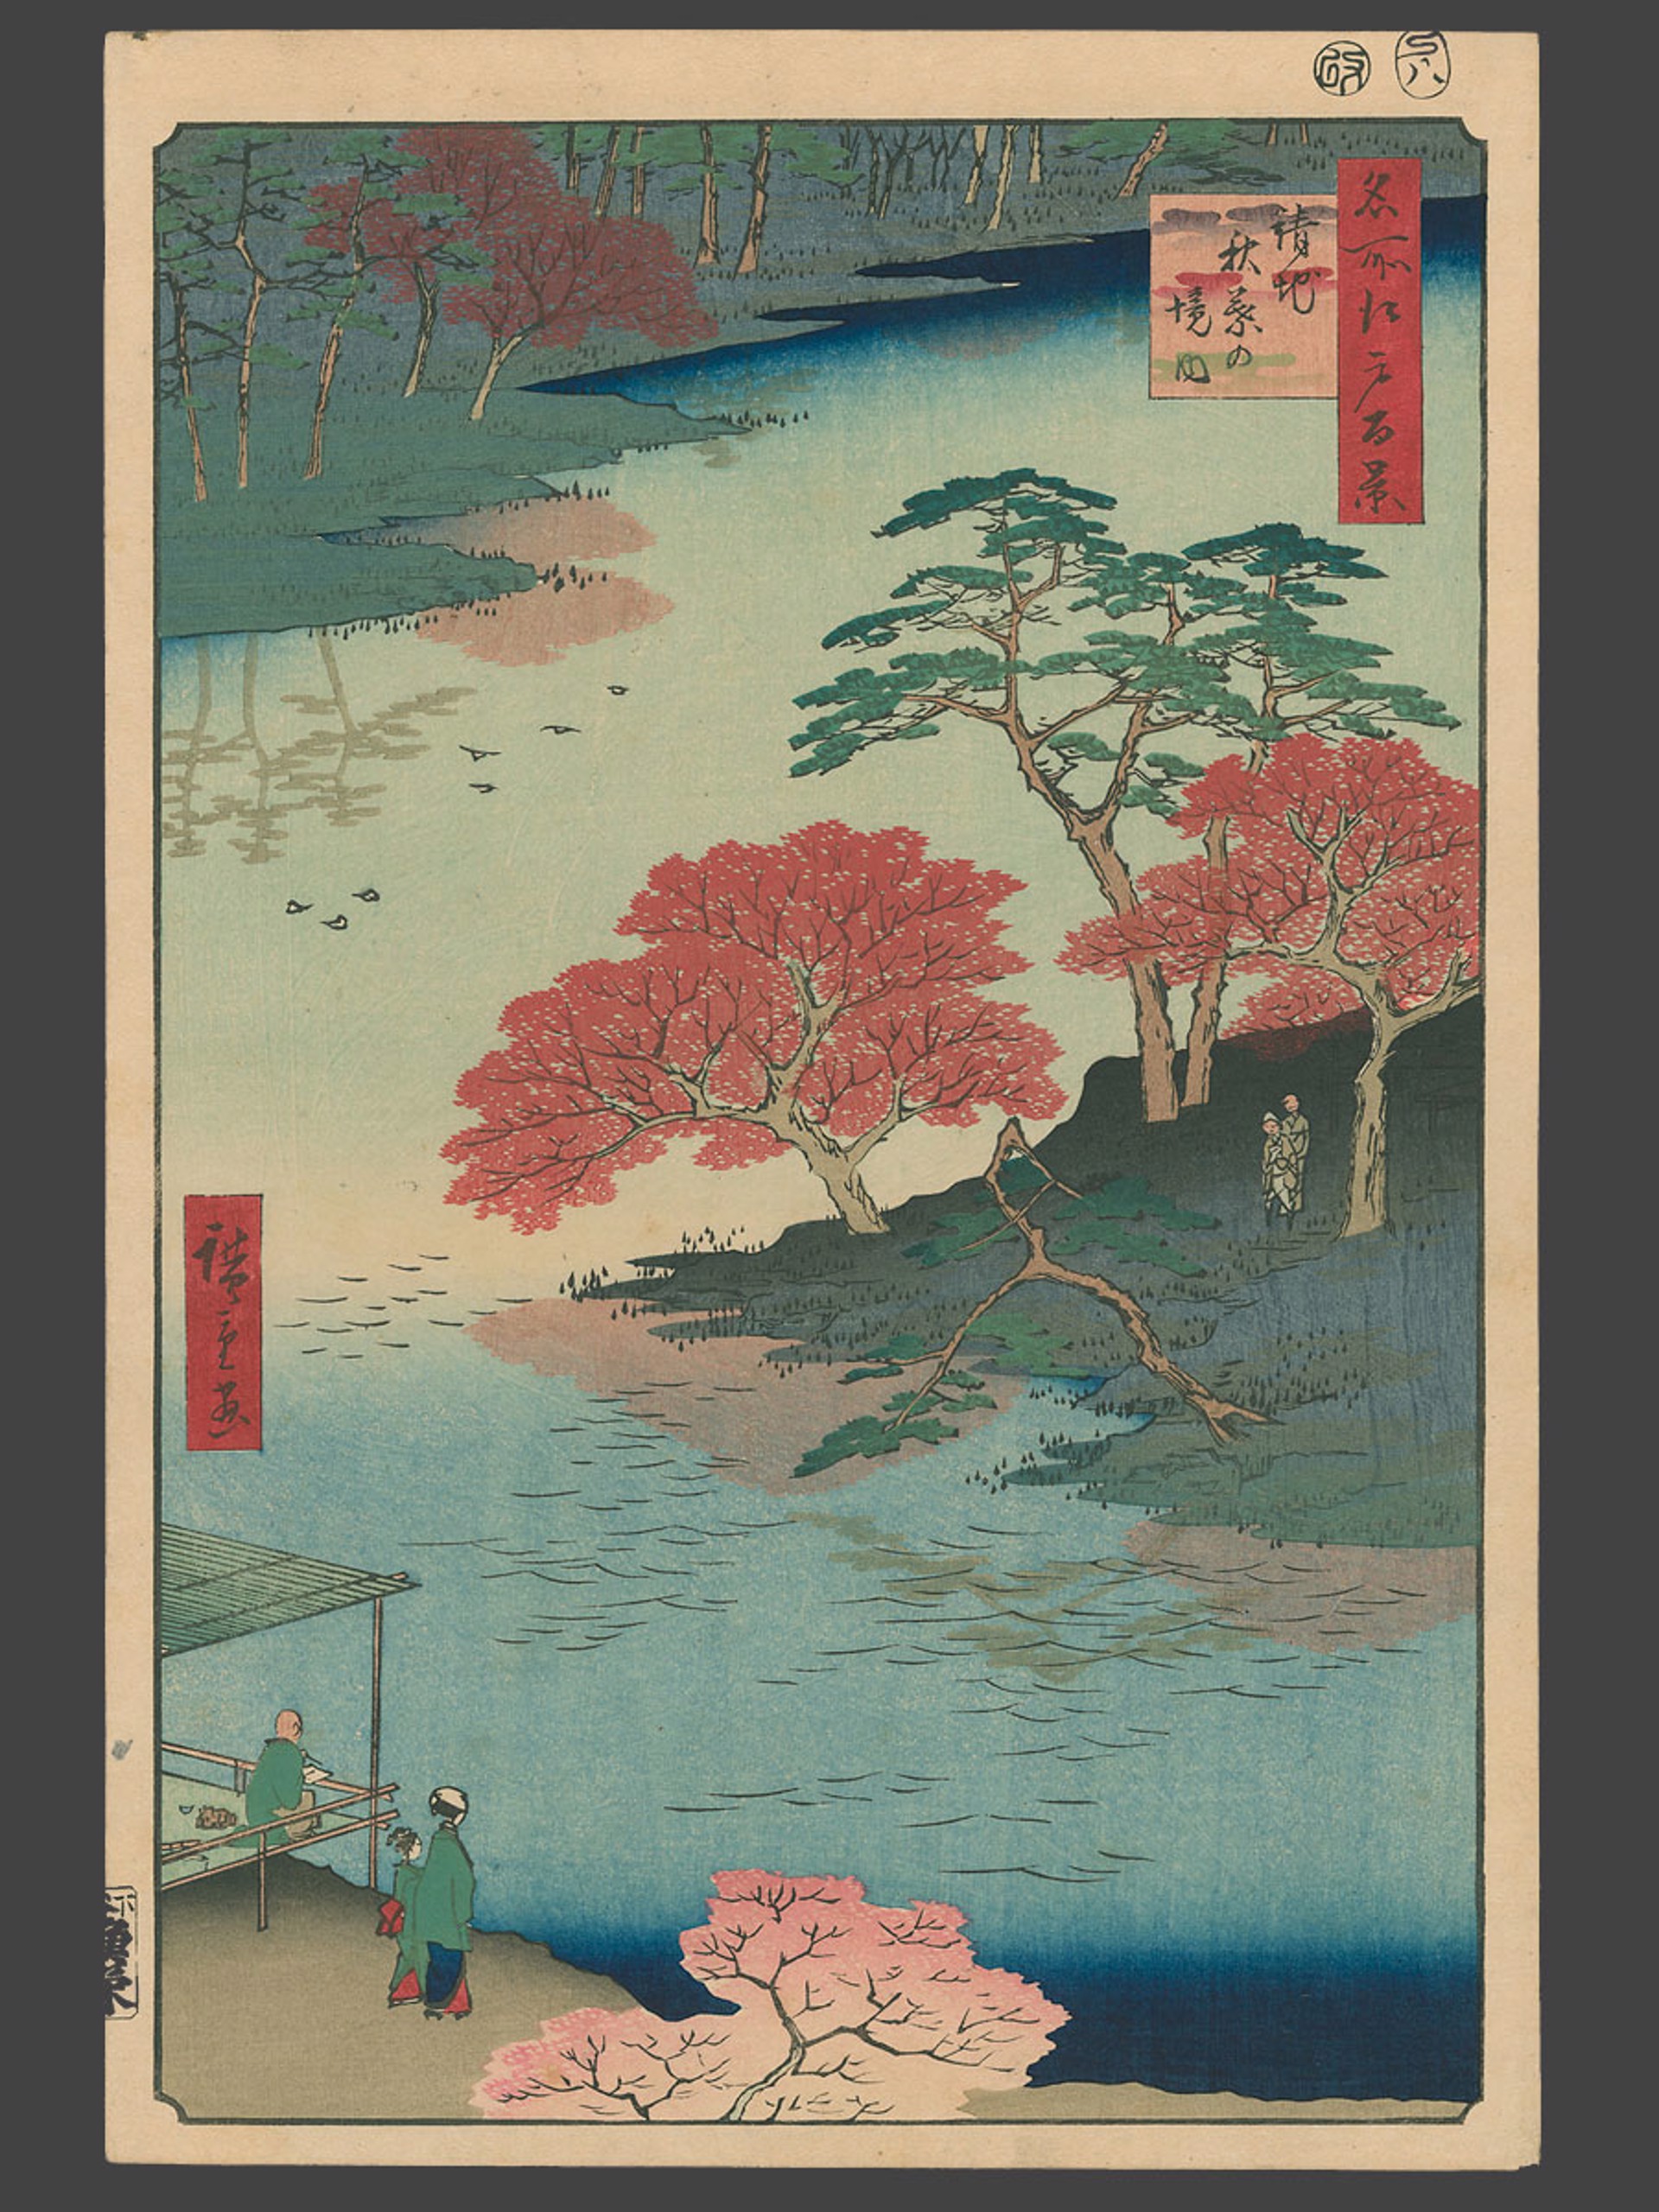 #91 Inside Akiba Shrine 100 Views of Edo by Hiroshige